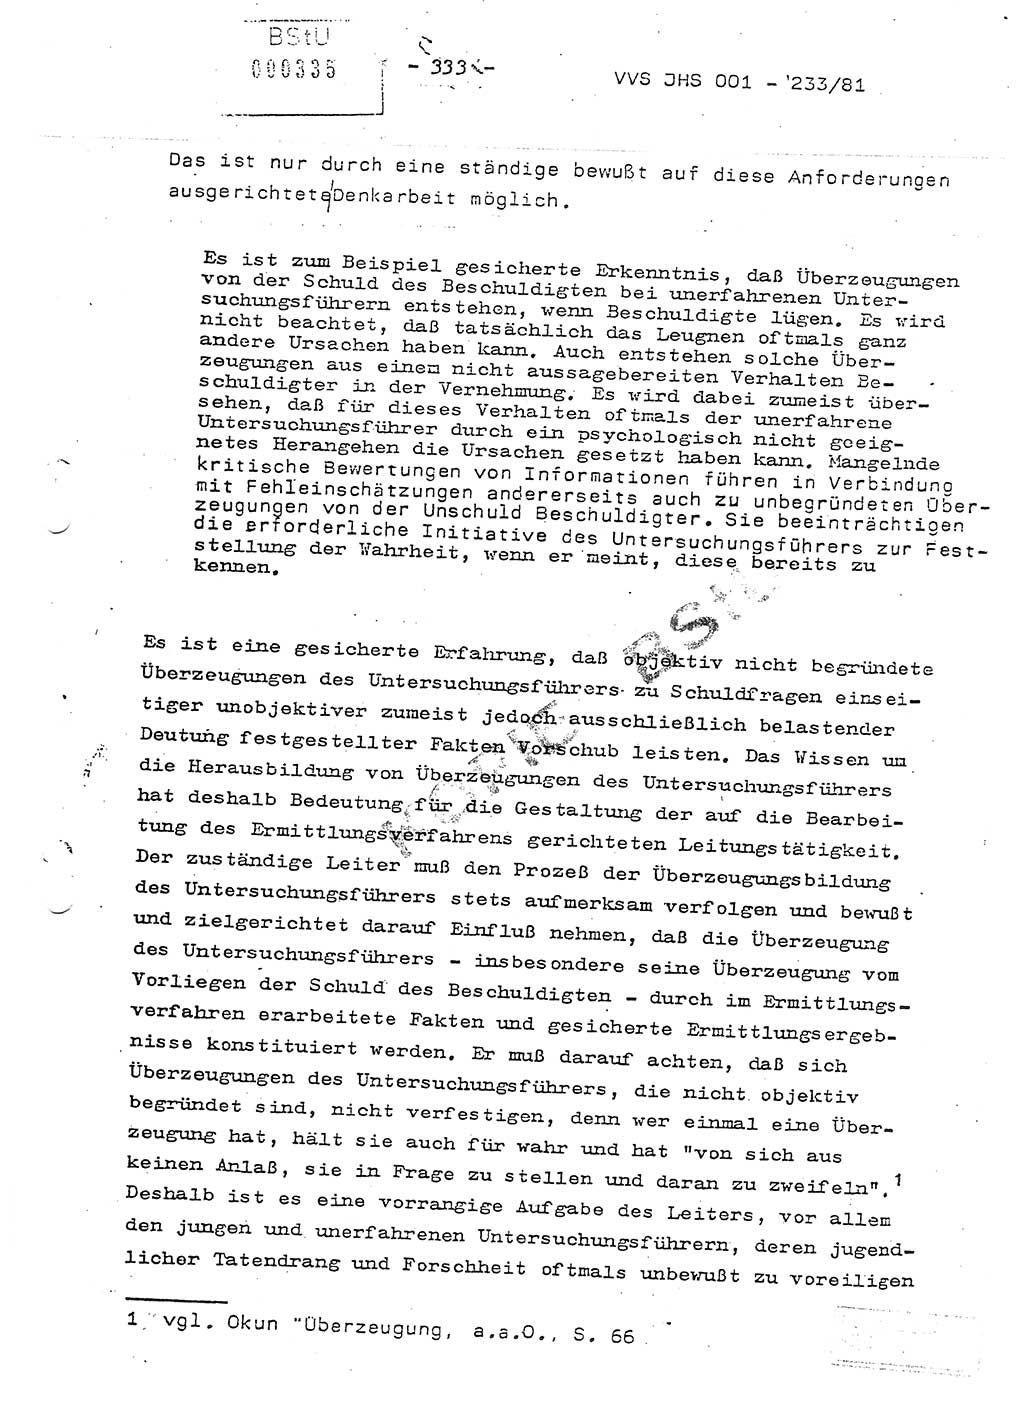 Dissertation Oberstleutnant Horst Zank (JHS), Oberstleutnant Dr. Karl-Heinz Knoblauch (JHS), Oberstleutnant Gustav-Adolf Kowalewski (HA Ⅸ), Oberstleutnant Wolfgang Plötner (HA Ⅸ), Ministerium für Staatssicherheit (MfS) [Deutsche Demokratische Republik (DDR)], Juristische Hochschule (JHS), Vertrauliche Verschlußsache (VVS) o001-233/81, Potsdam 1981, Blatt 333 (Diss. MfS DDR JHS VVS o001-233/81 1981, Bl. 333)